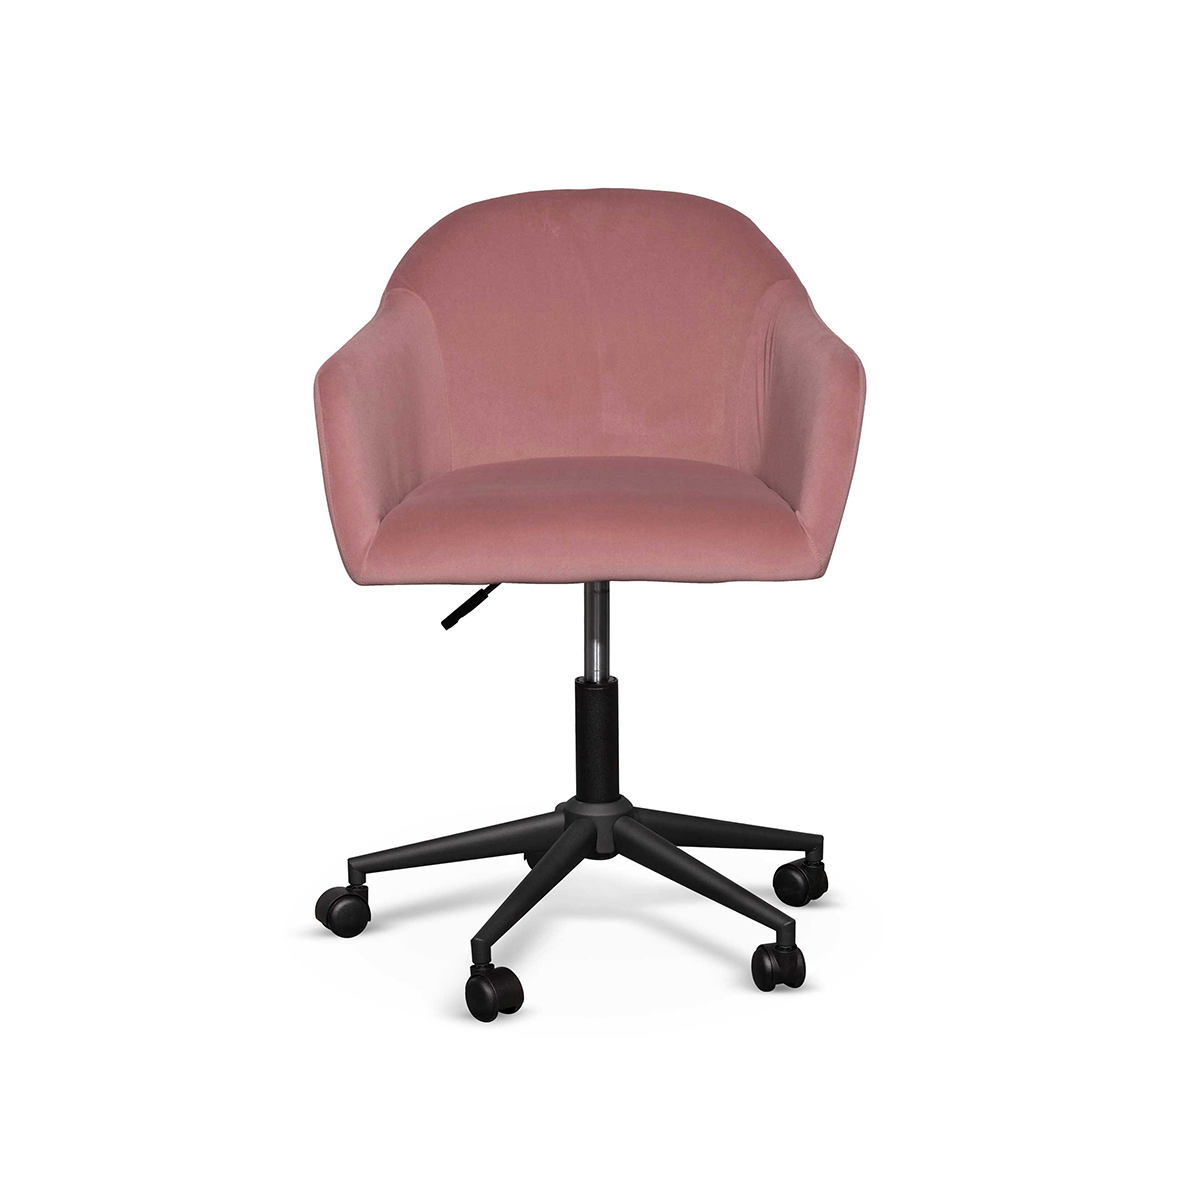 FondHouse Ramise Velvet Office Chair - Black Base